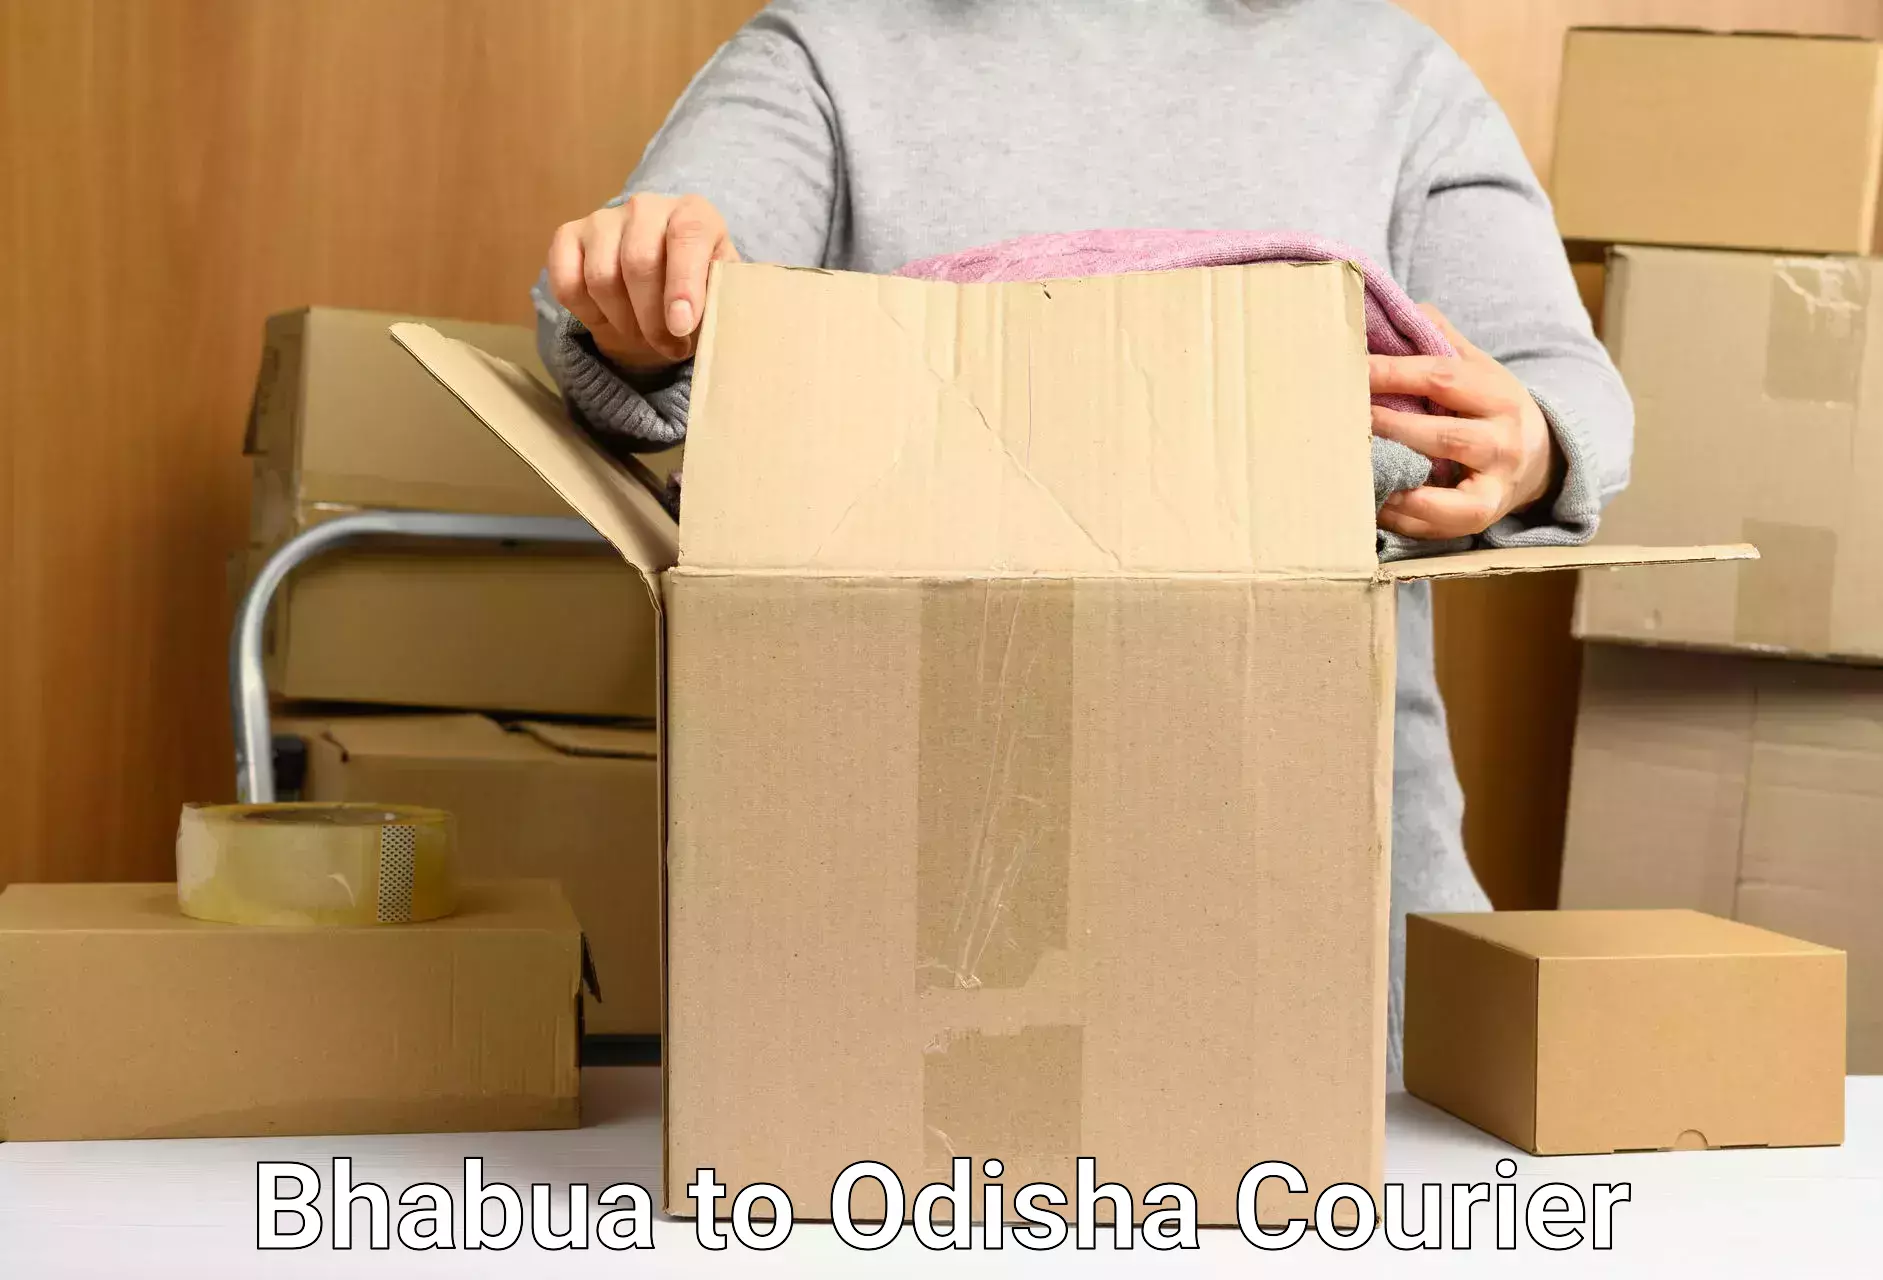 Flexible courier rates Bhabua to Bhanjanagar